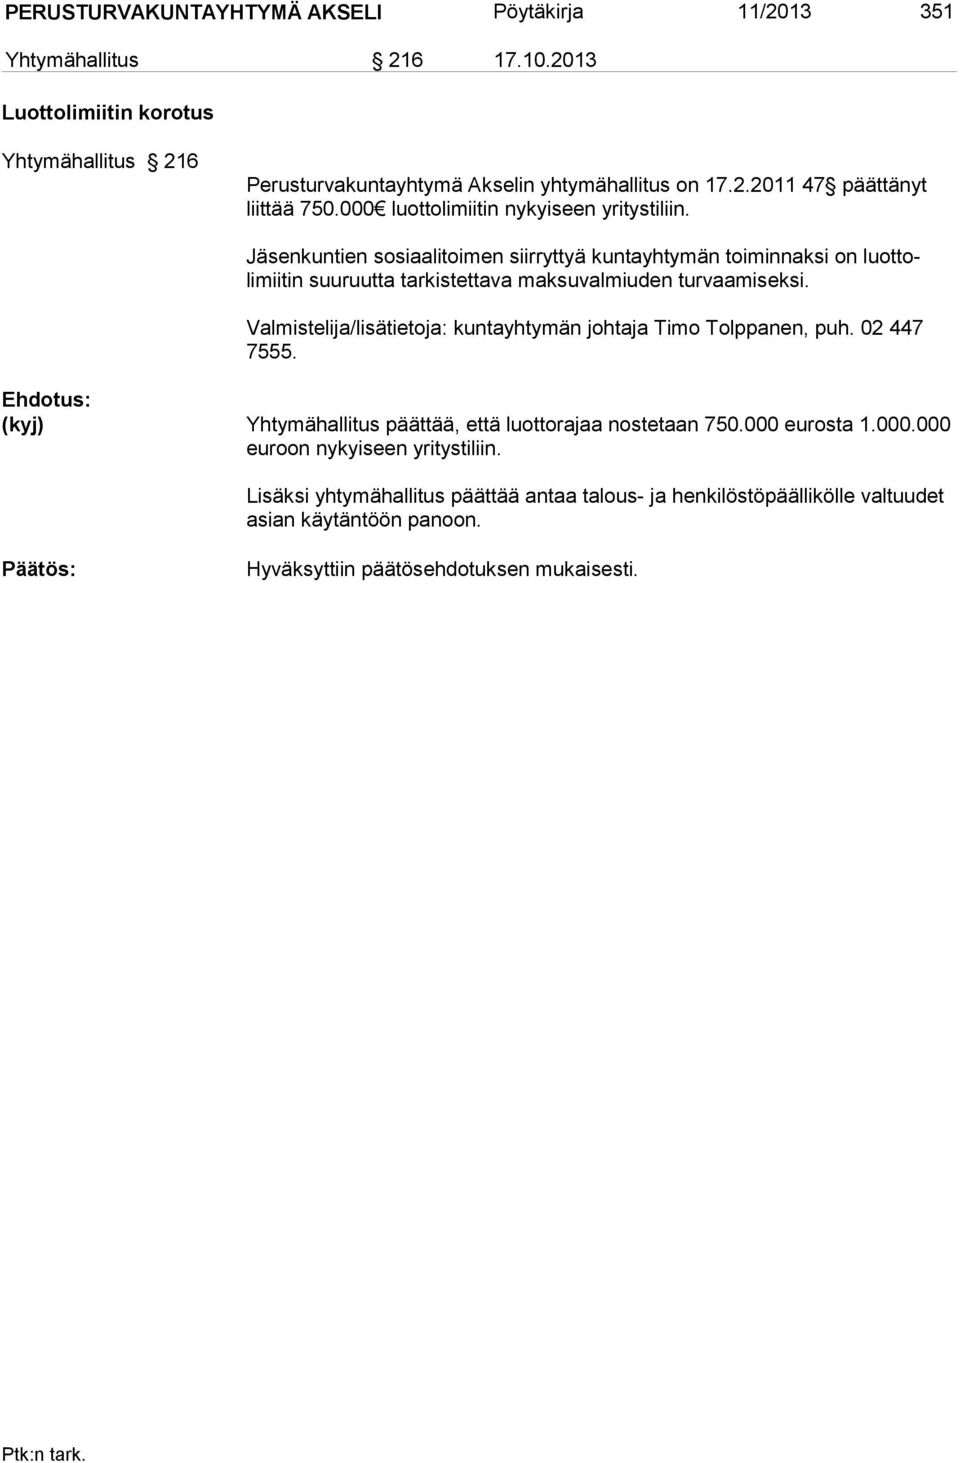 Valmistelija/lisätietoja: kuntayhtymän johtaja Timo Tolppanen, puh. 02 447 7555. Yhtymähallitus päättää, että luottorajaa nostetaan 750.000 eurosta 1.000.000 euroon nykyiseen yritystiliin.